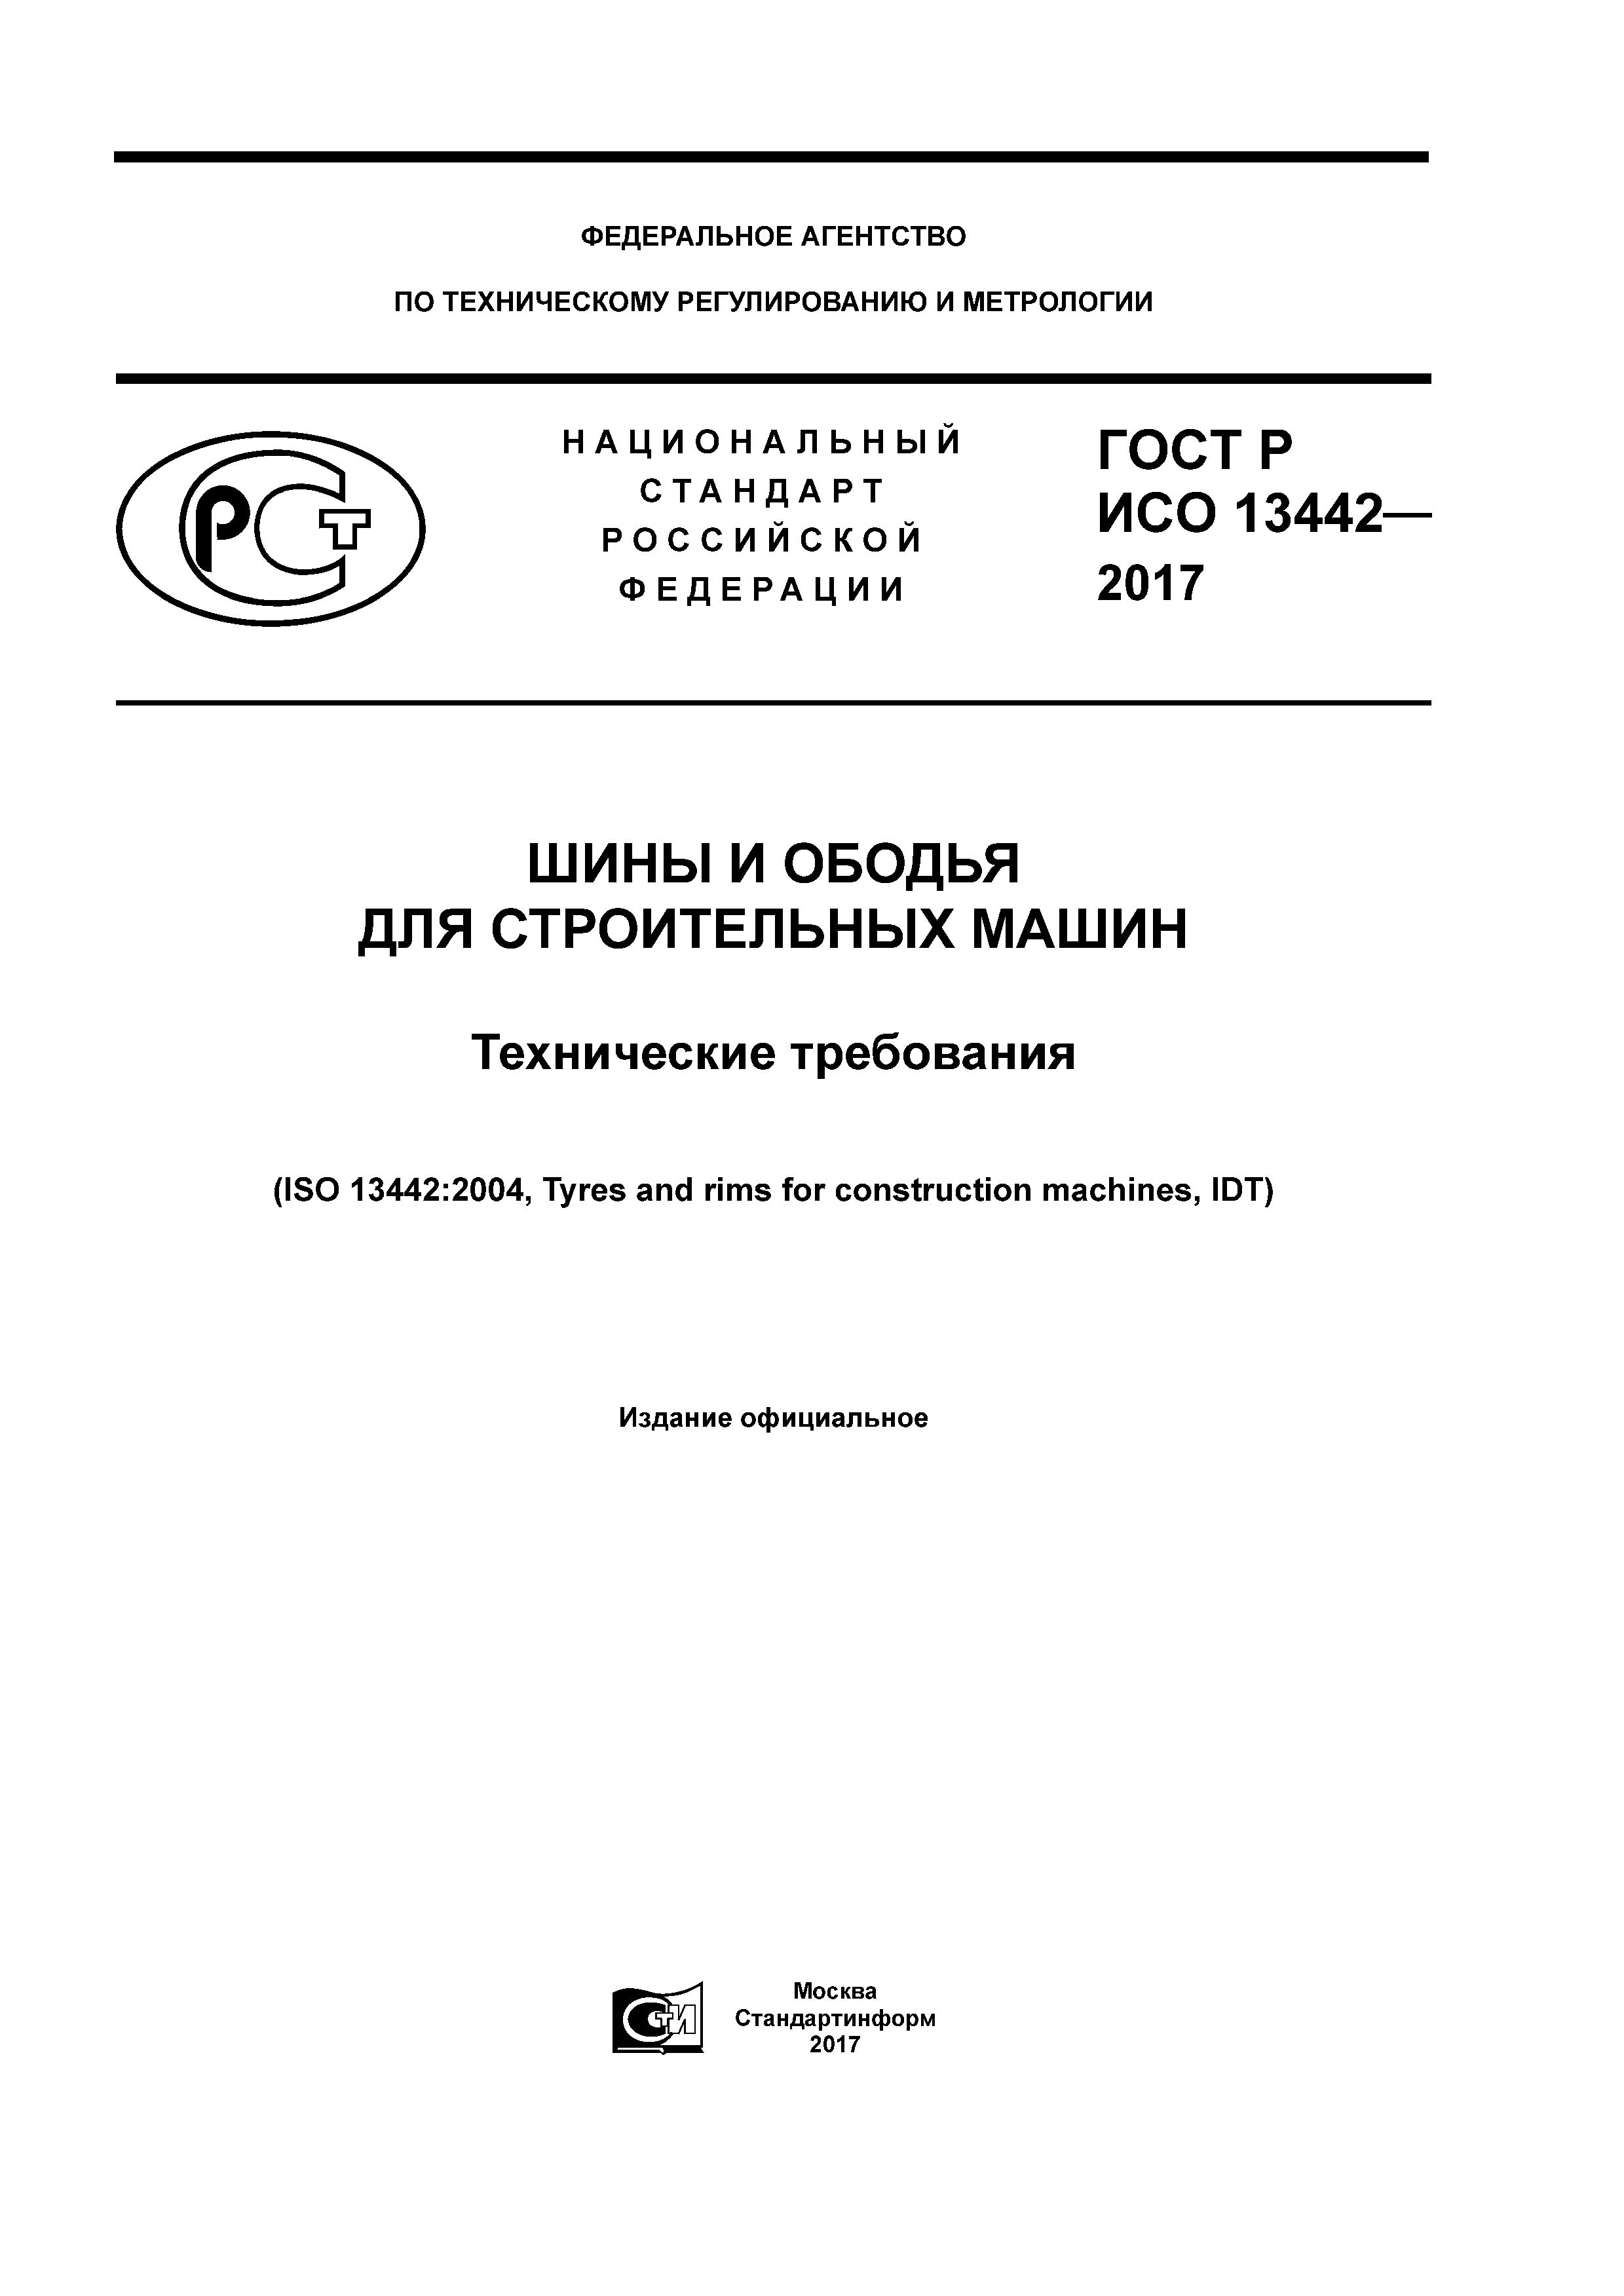 ГОСТ Р ИСО 13442-2017